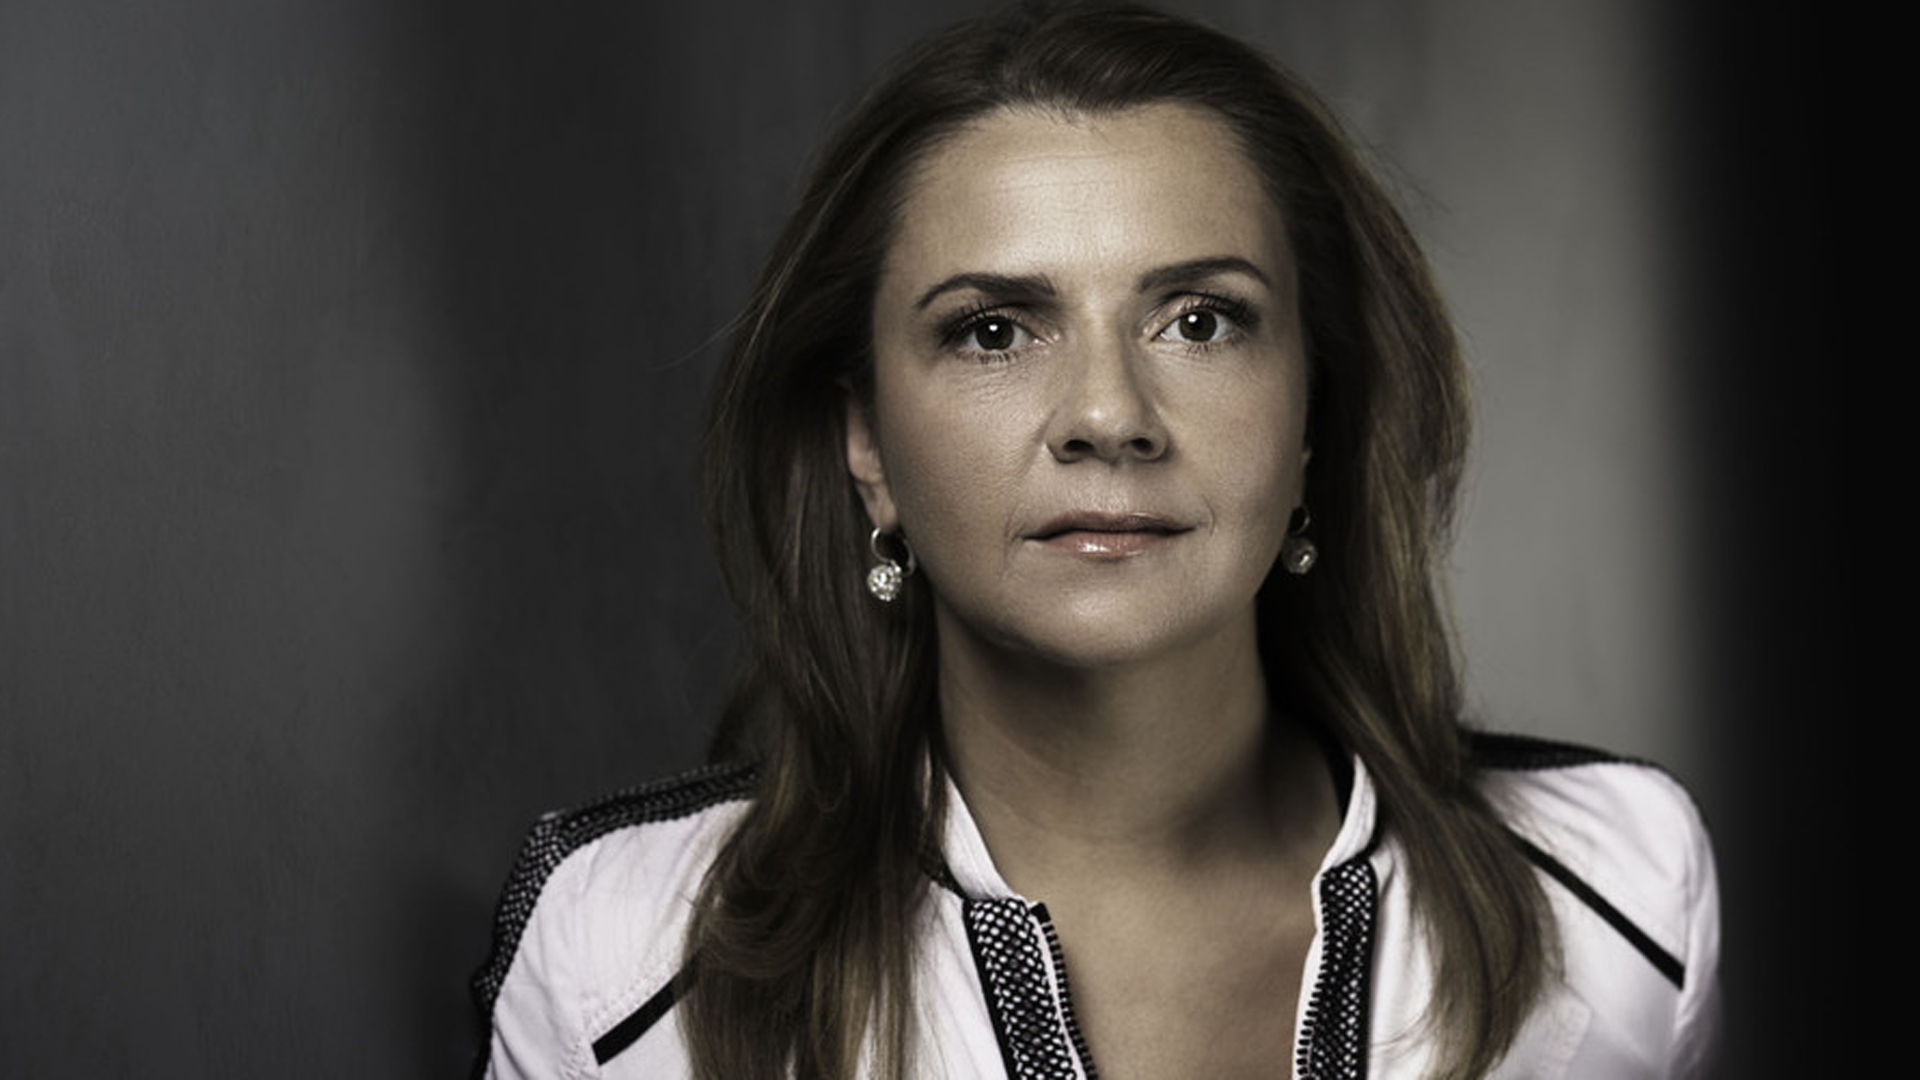 Die Journalistin Birgit Kelle kritisiert in ihrem neuen Buch das Gender Mainstreaming